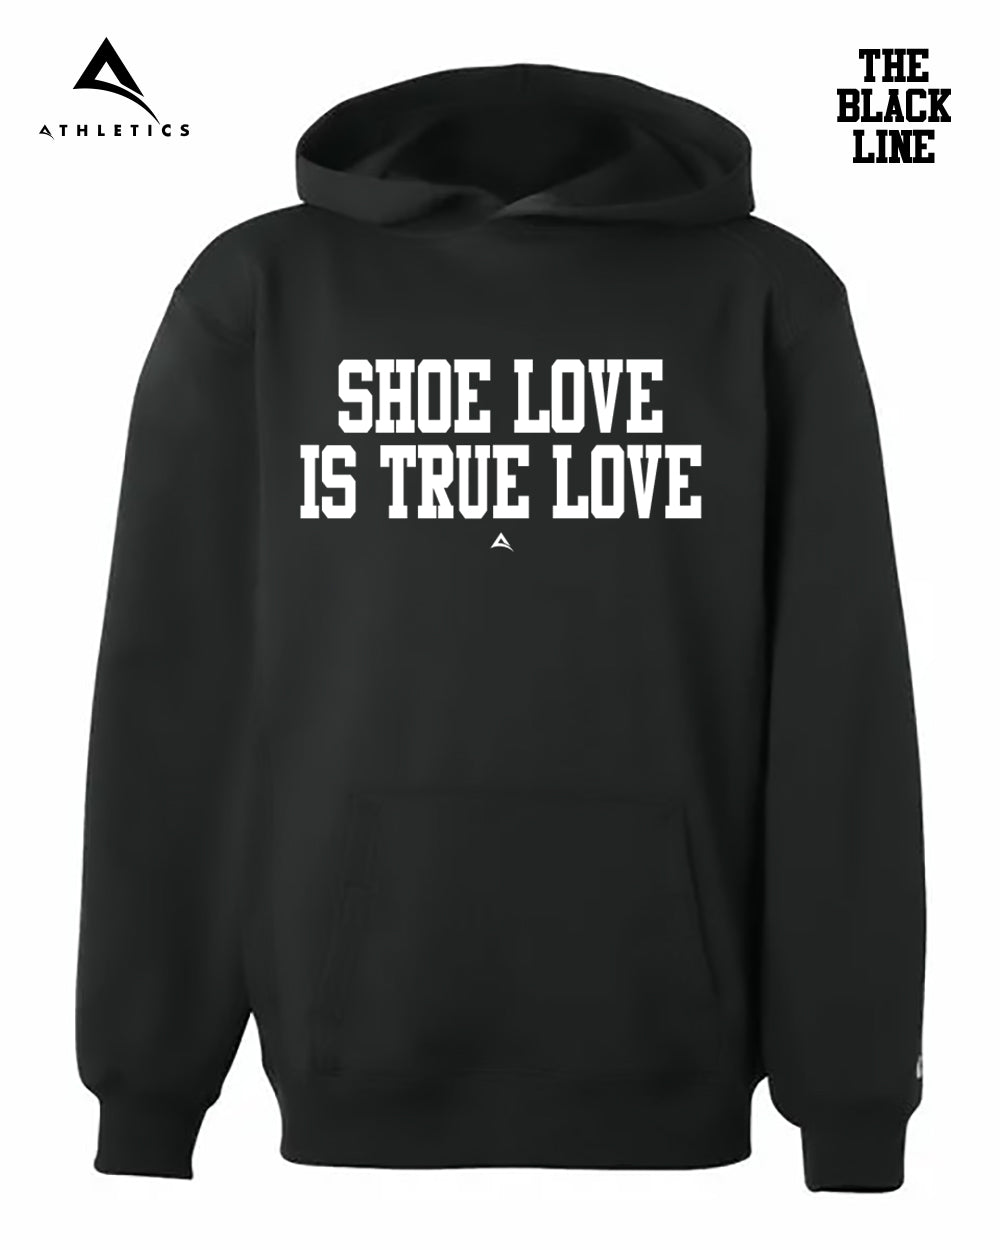 SHOE LOVE IS TRUE LOVE